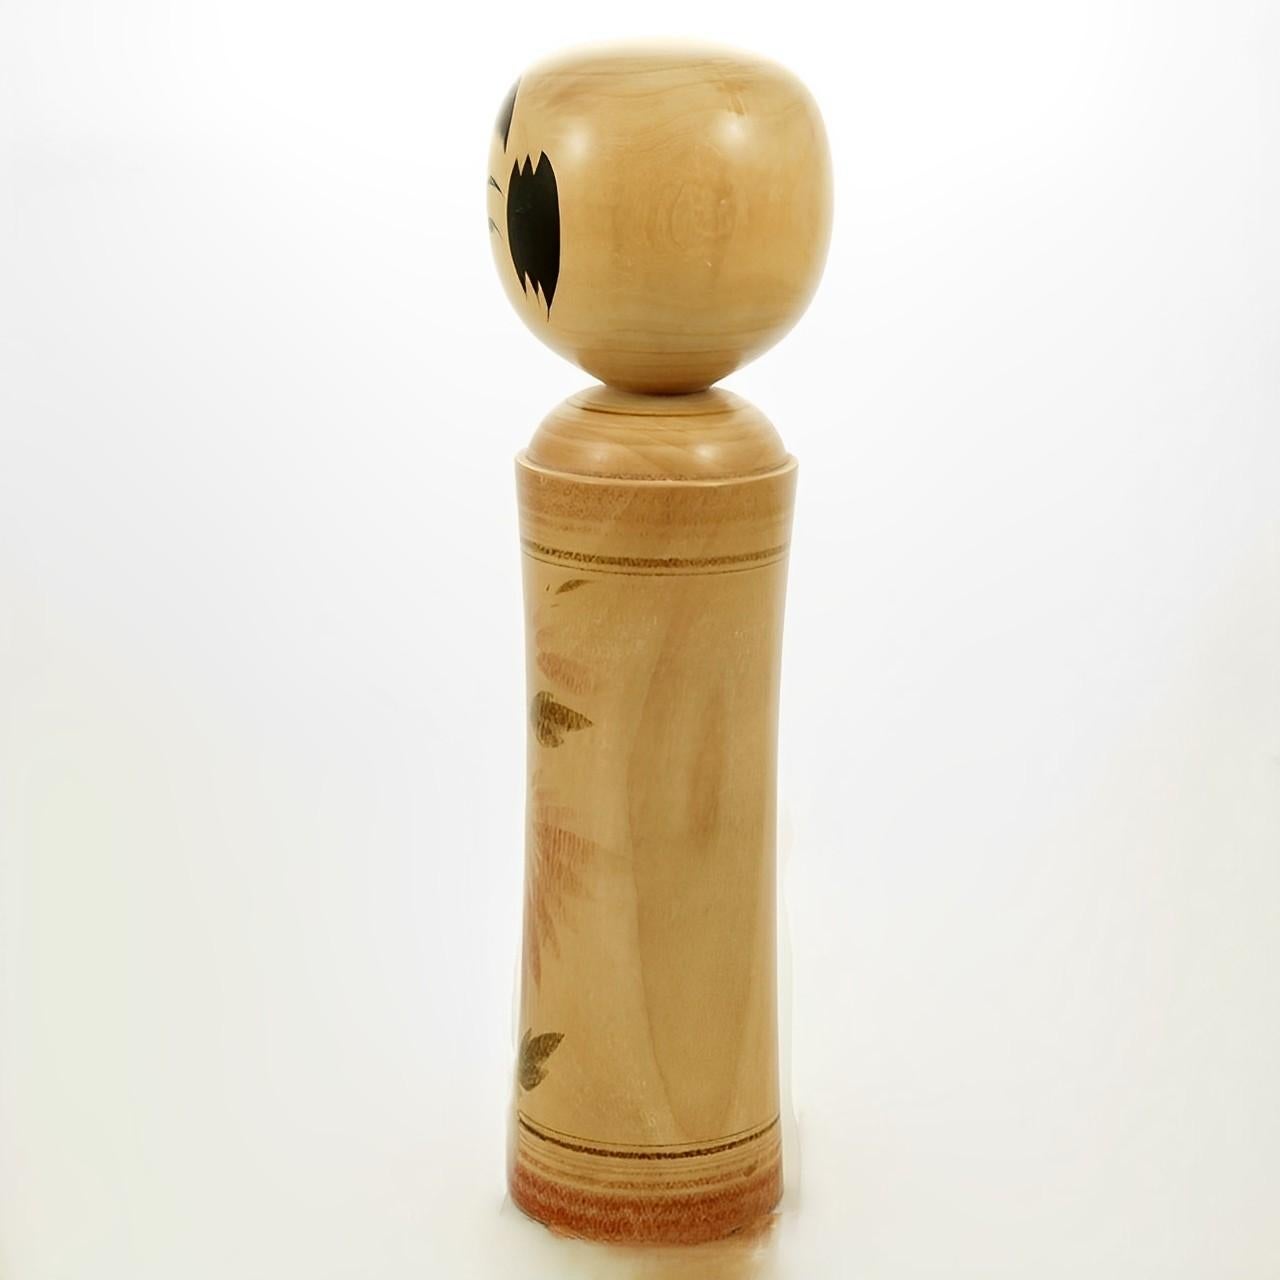 
Japanische Kokeshi-Volkskunst-Holzpuppe von Kumagai Otsu. Es gibt zehn Arten von Kokeshi-Puppen, dies ist die Naruko-Variante. Messen Höhe 23,5 cm / 9,25 Zoll durch Durchmesser an der Basis 5,7 cm / 2,24 Zoll. Die Kokeshi-Puppe ist in sehr gutem